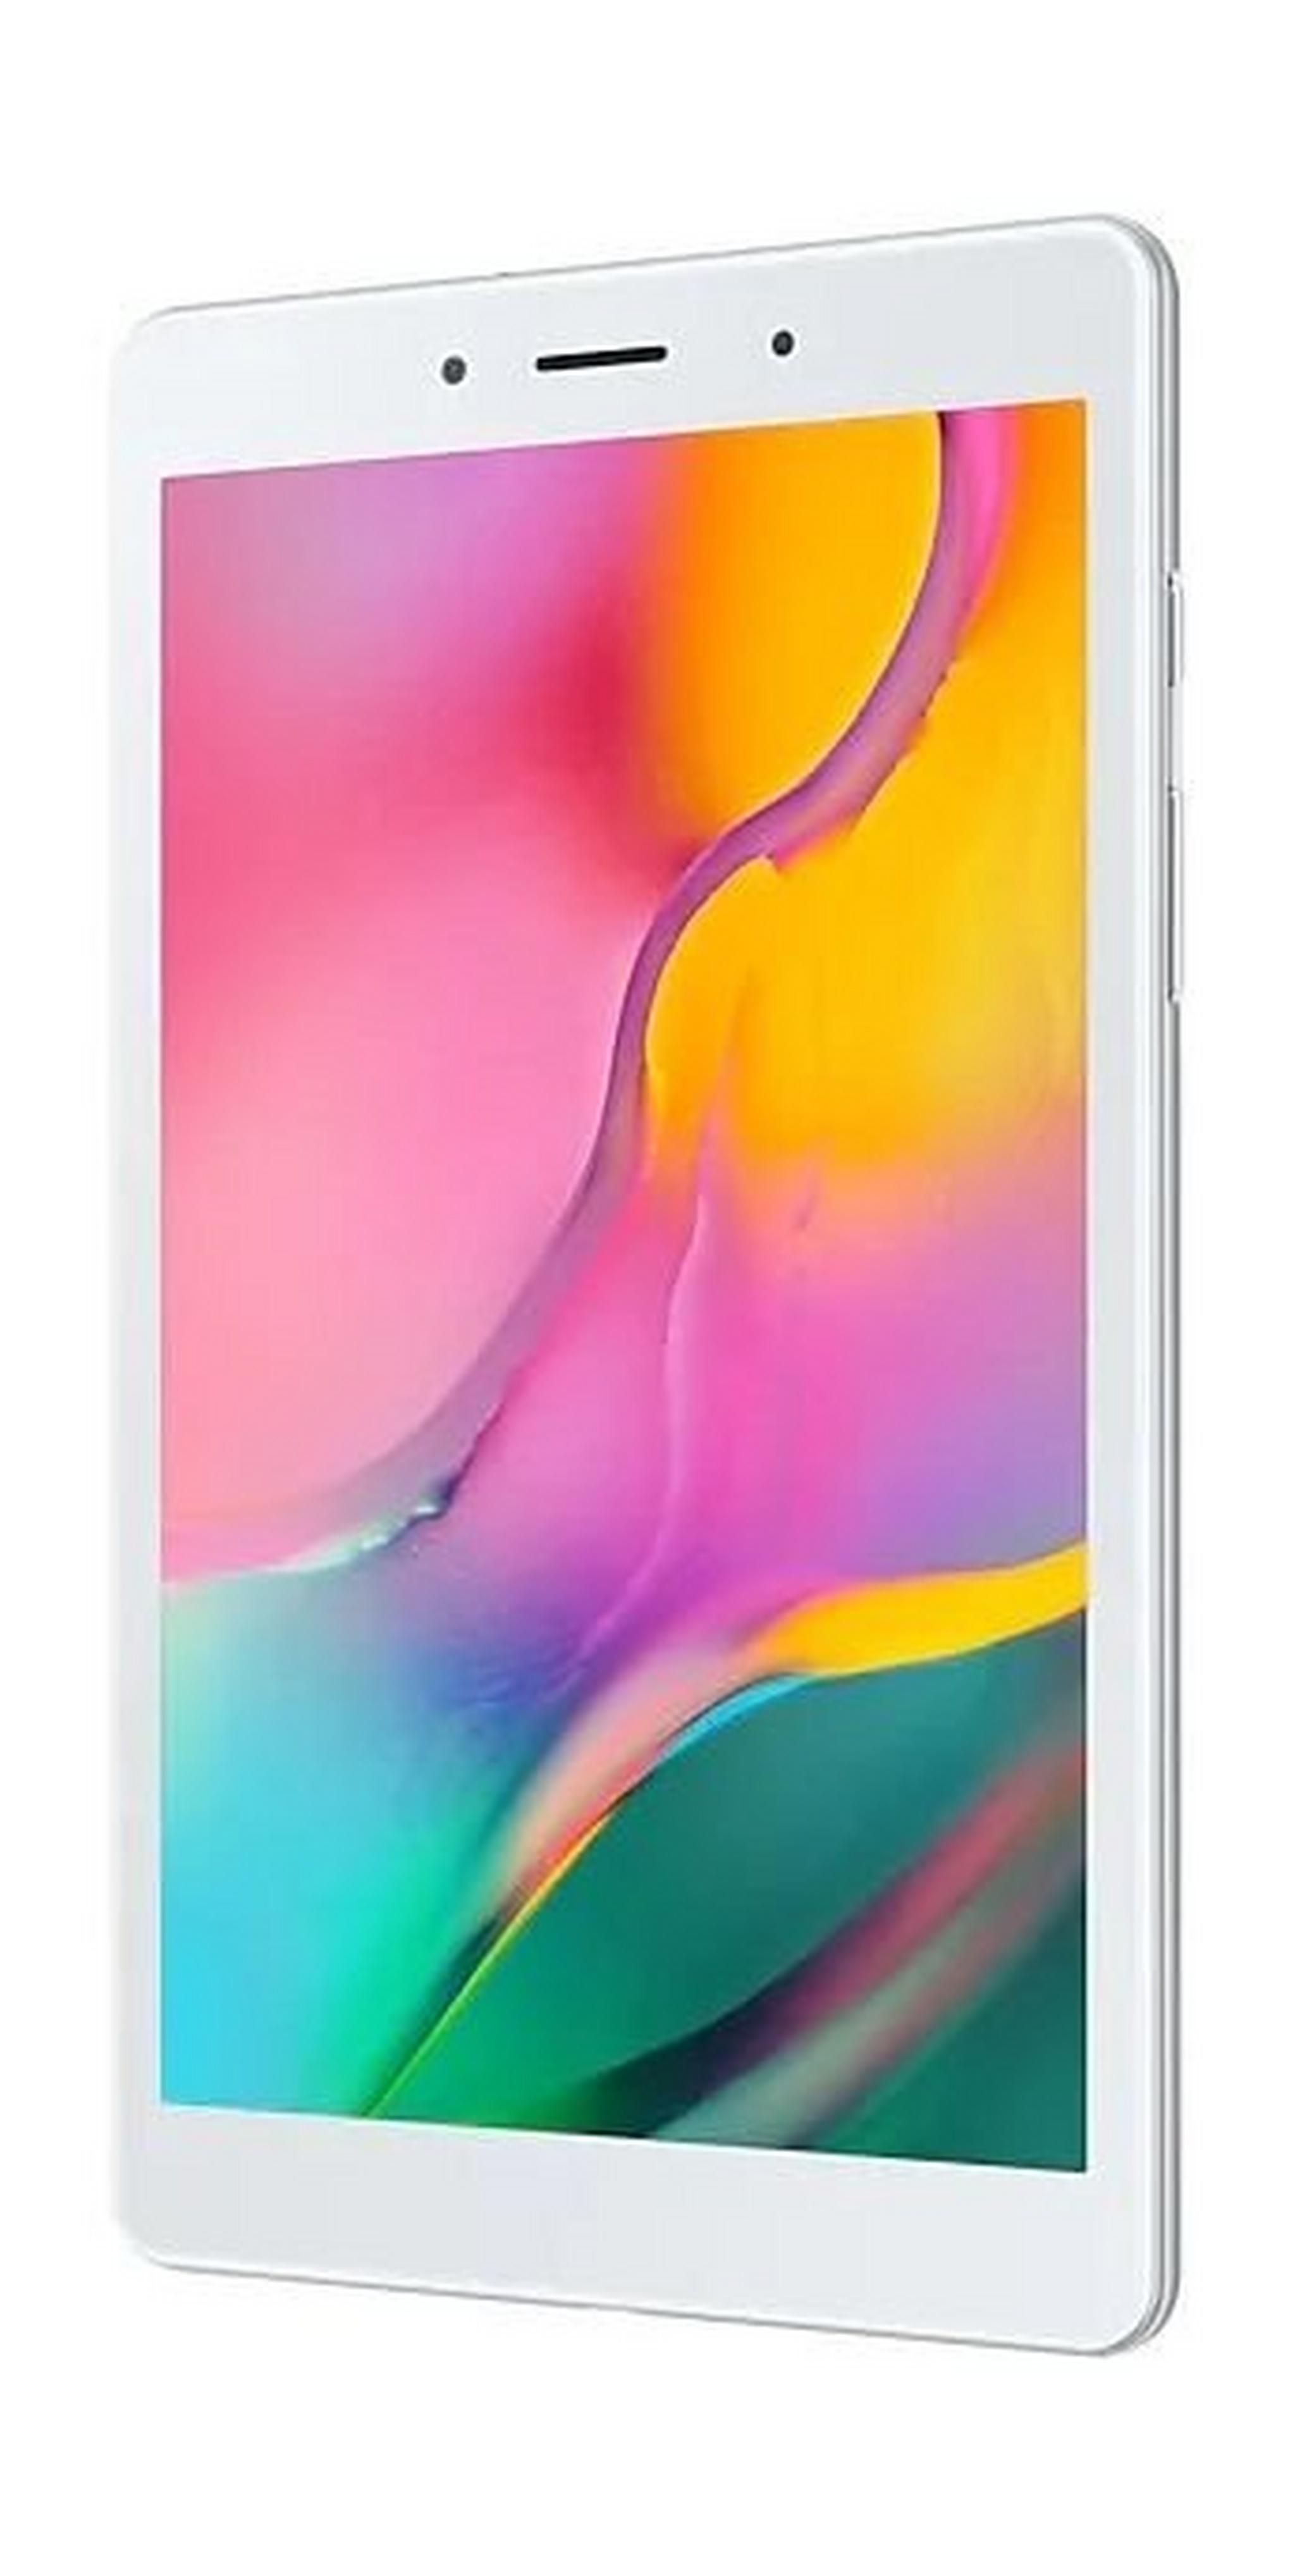 SAMSUNG Galaxy Tab A 2019 8-inch 32GB Wi-Fi Only Tablet - Silver